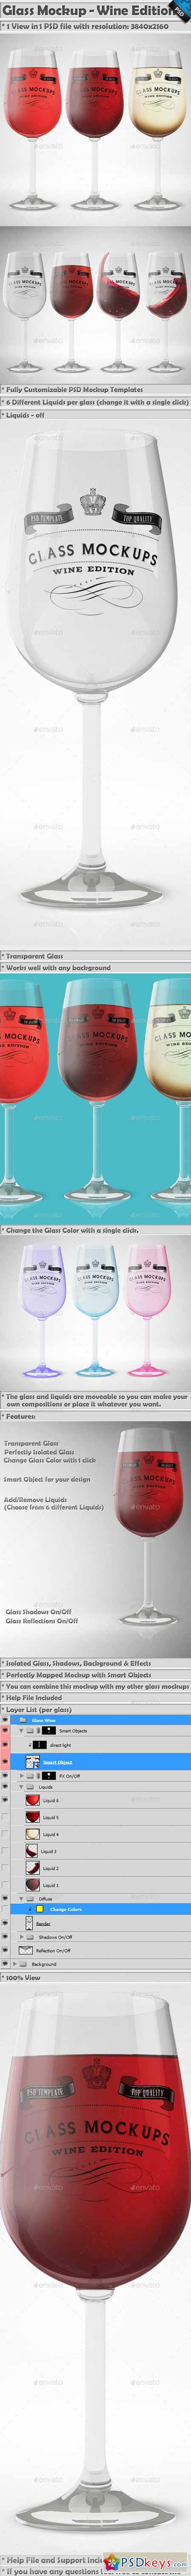 Glass Mockup - Wine Glass Mockup Volume 13 13312218